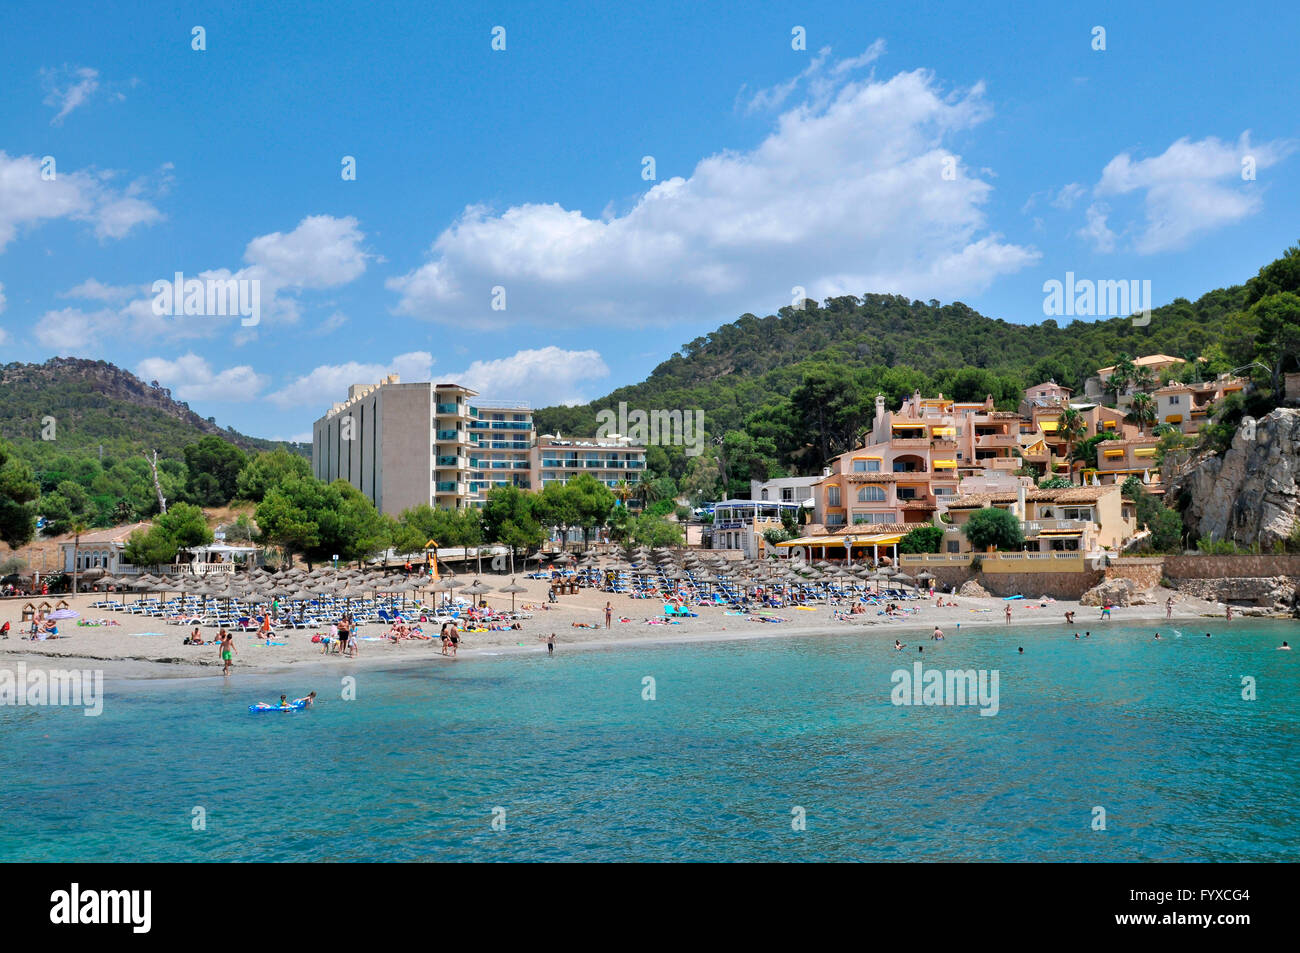 Camp de Mar, Mallorca, Spain Stock Photo